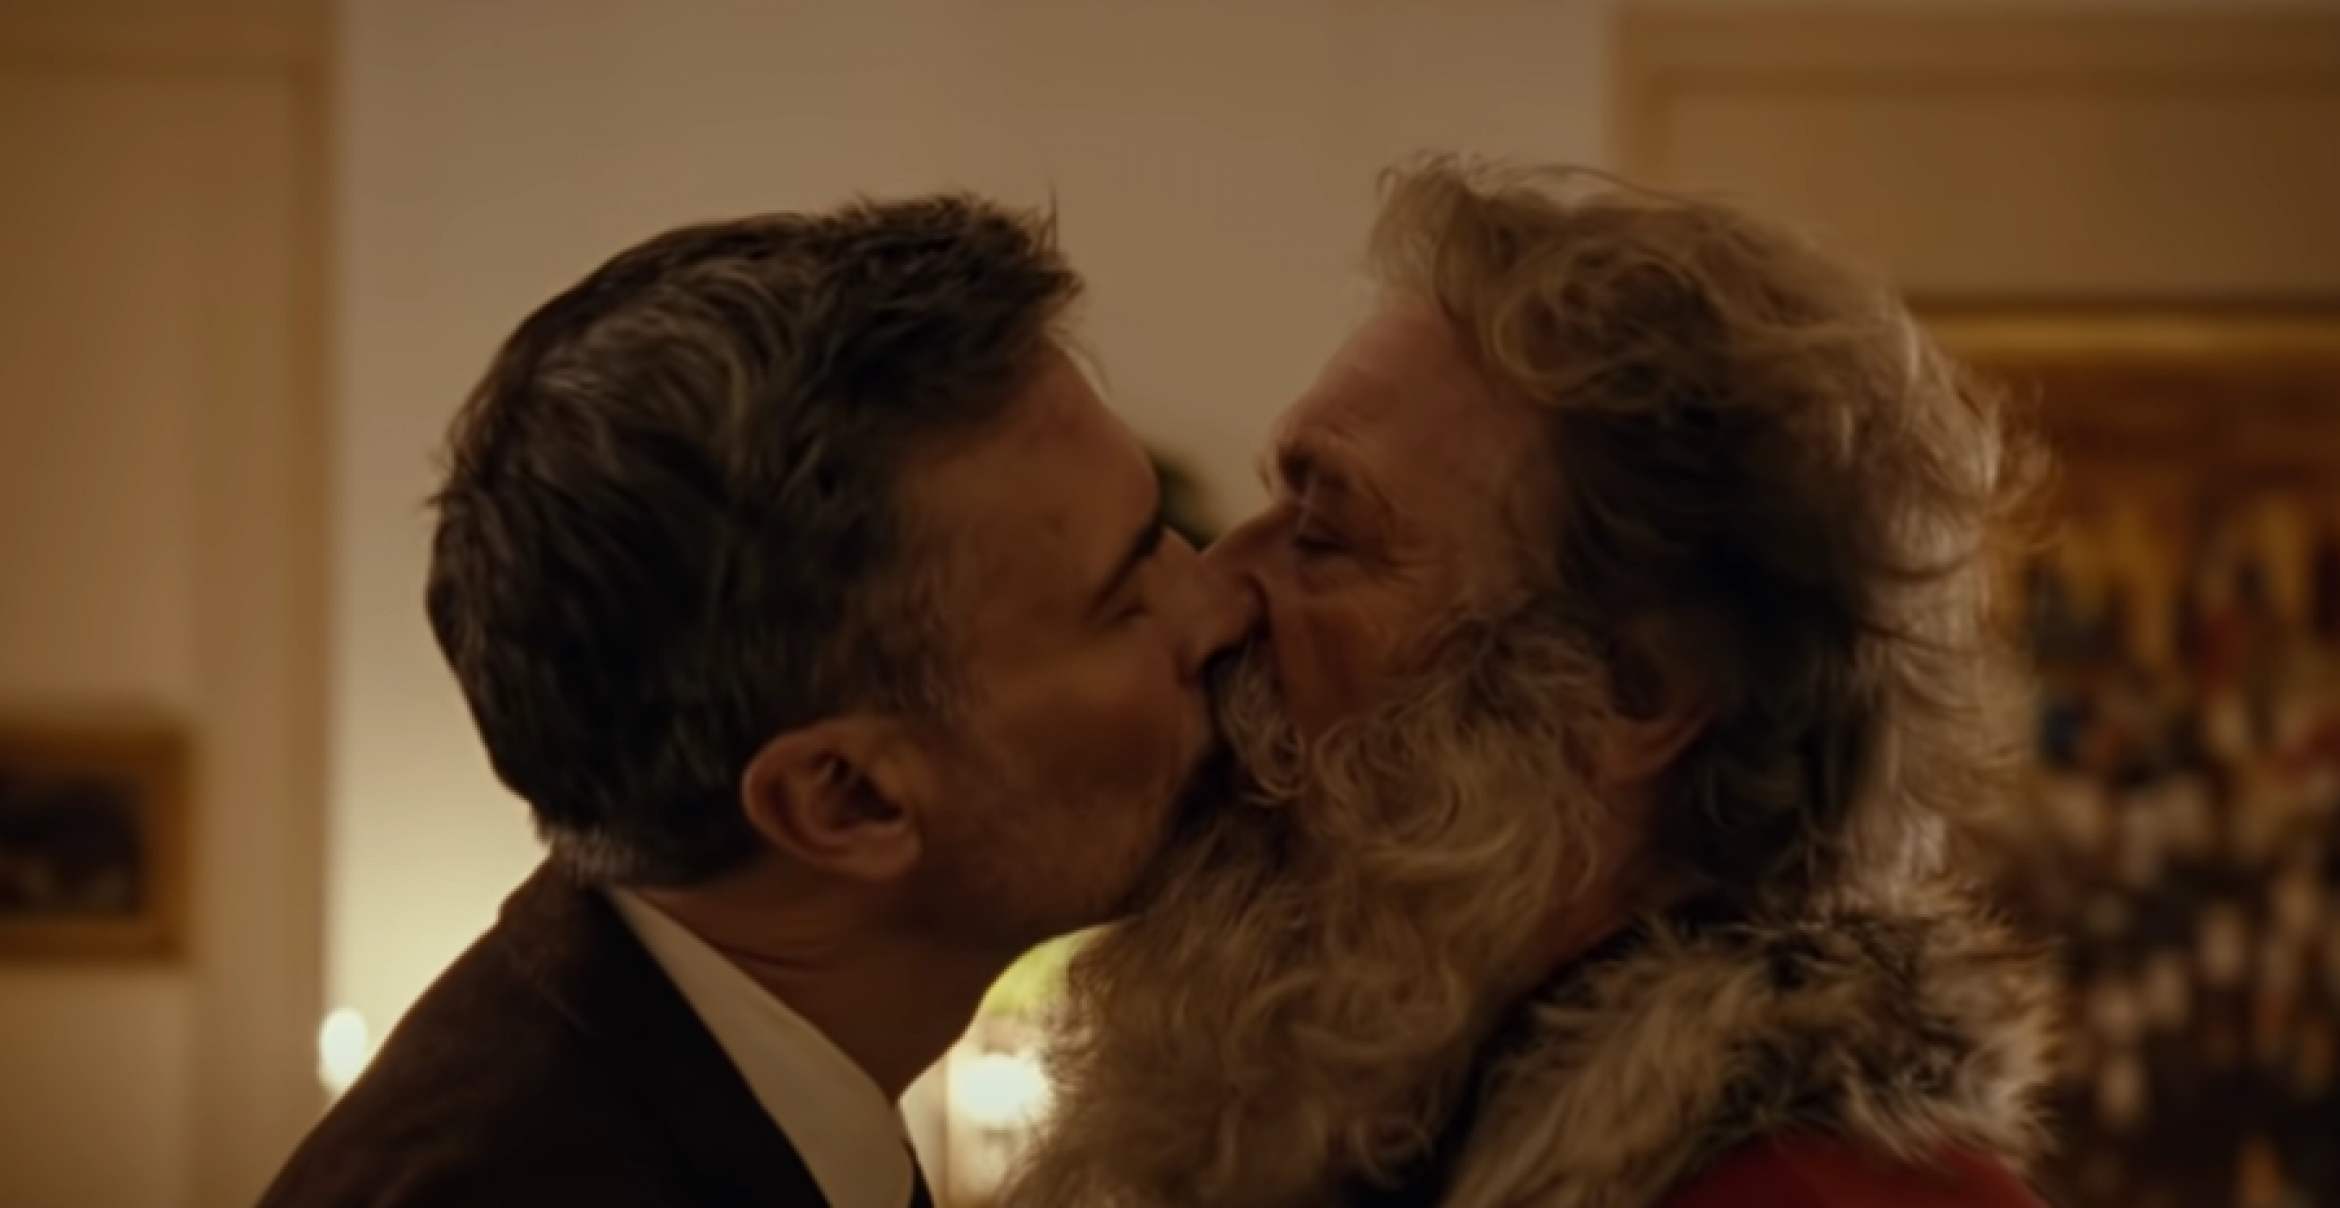 Santa liebt einen Mann – Norwegische Post wirbt mit homosexueller Liebe